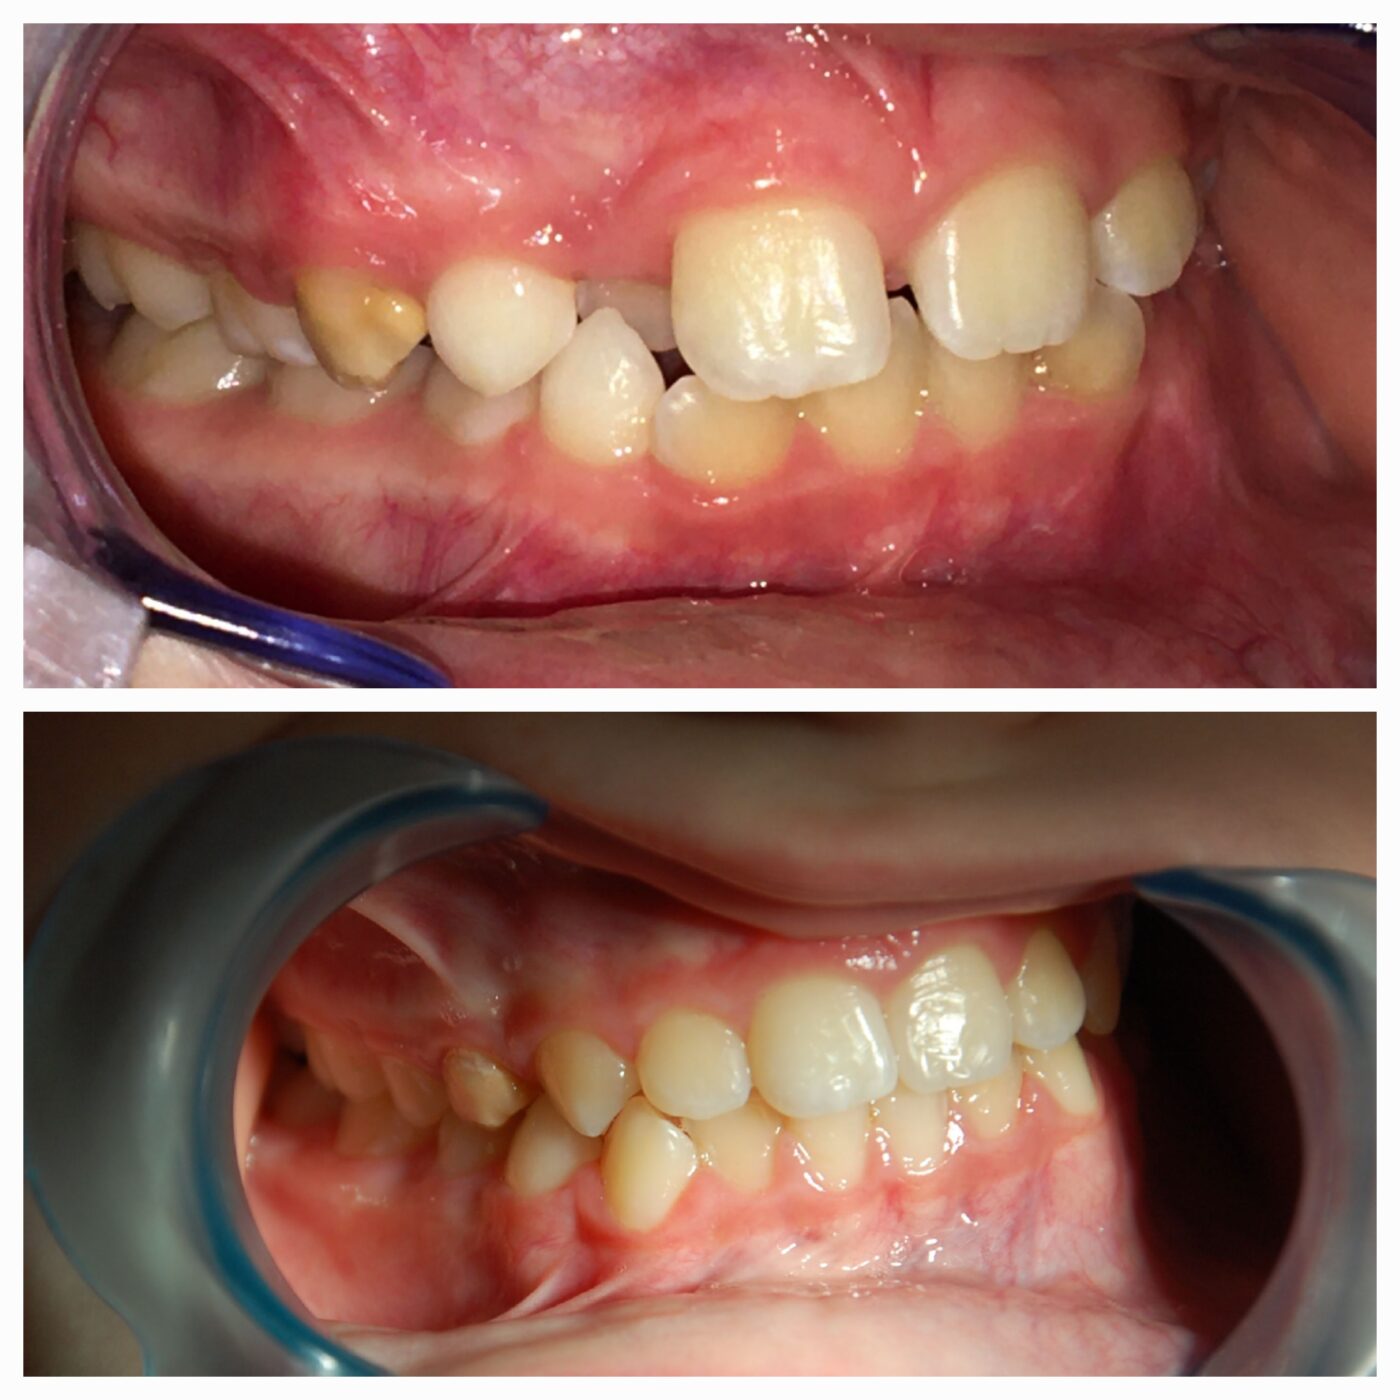 Efekty leczenia ortodontycznego stałym aparatem w Klinice Bodent
